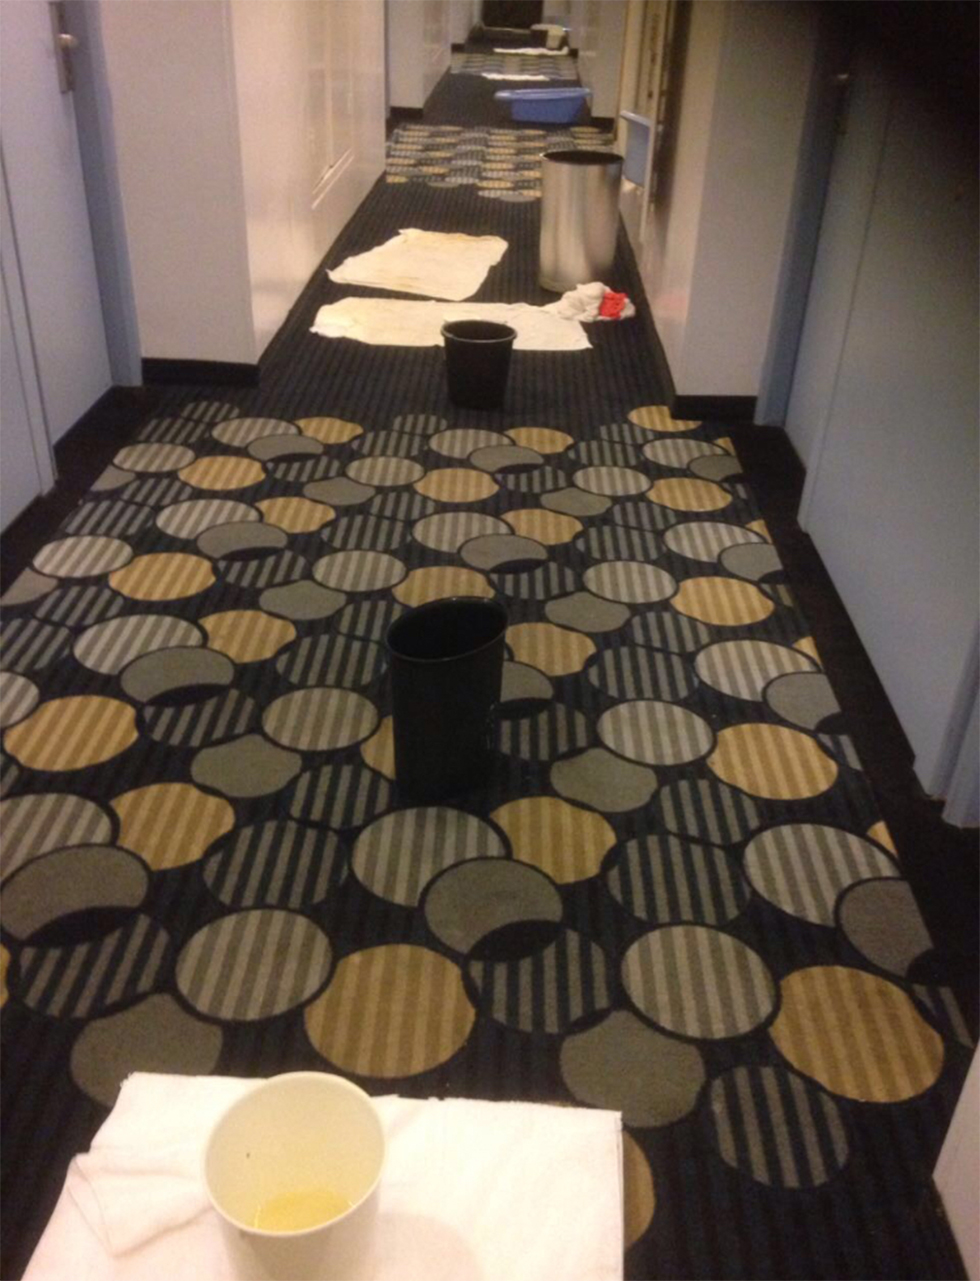 אוגרים מים במסדרון במלון "ספורט" (צילום: שרון בר) (צילום: שרון בר)